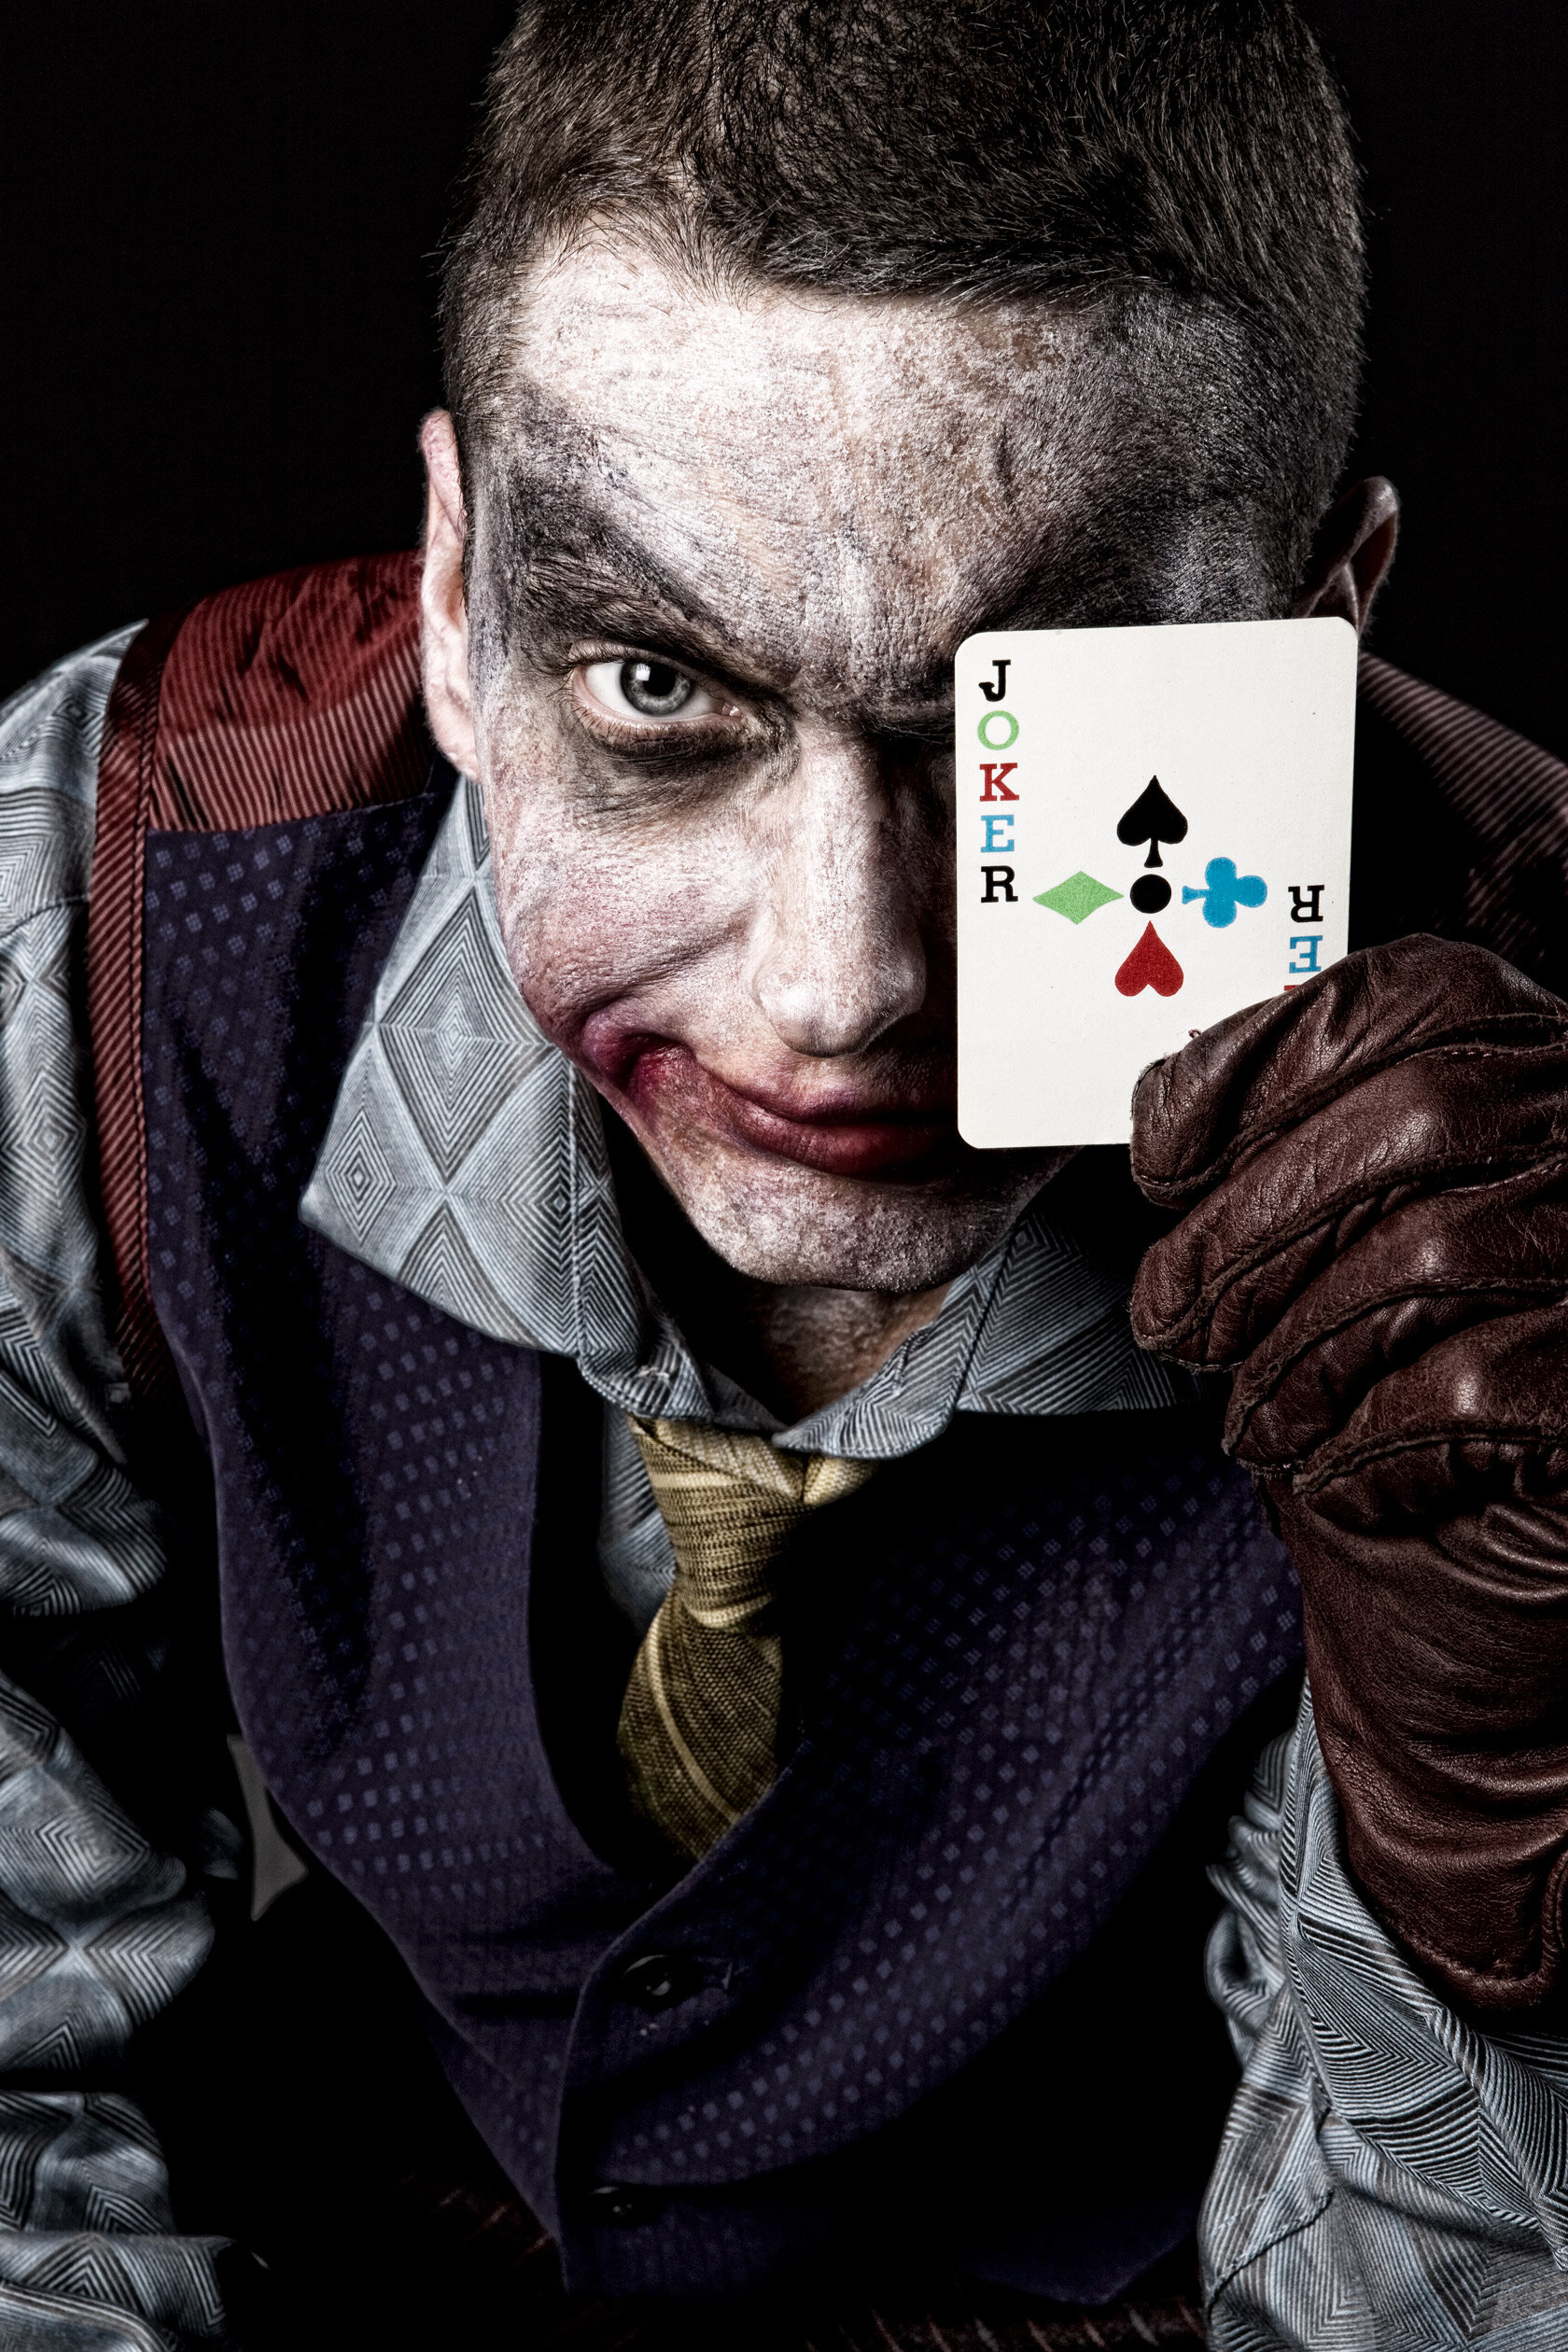 Eminem Joker